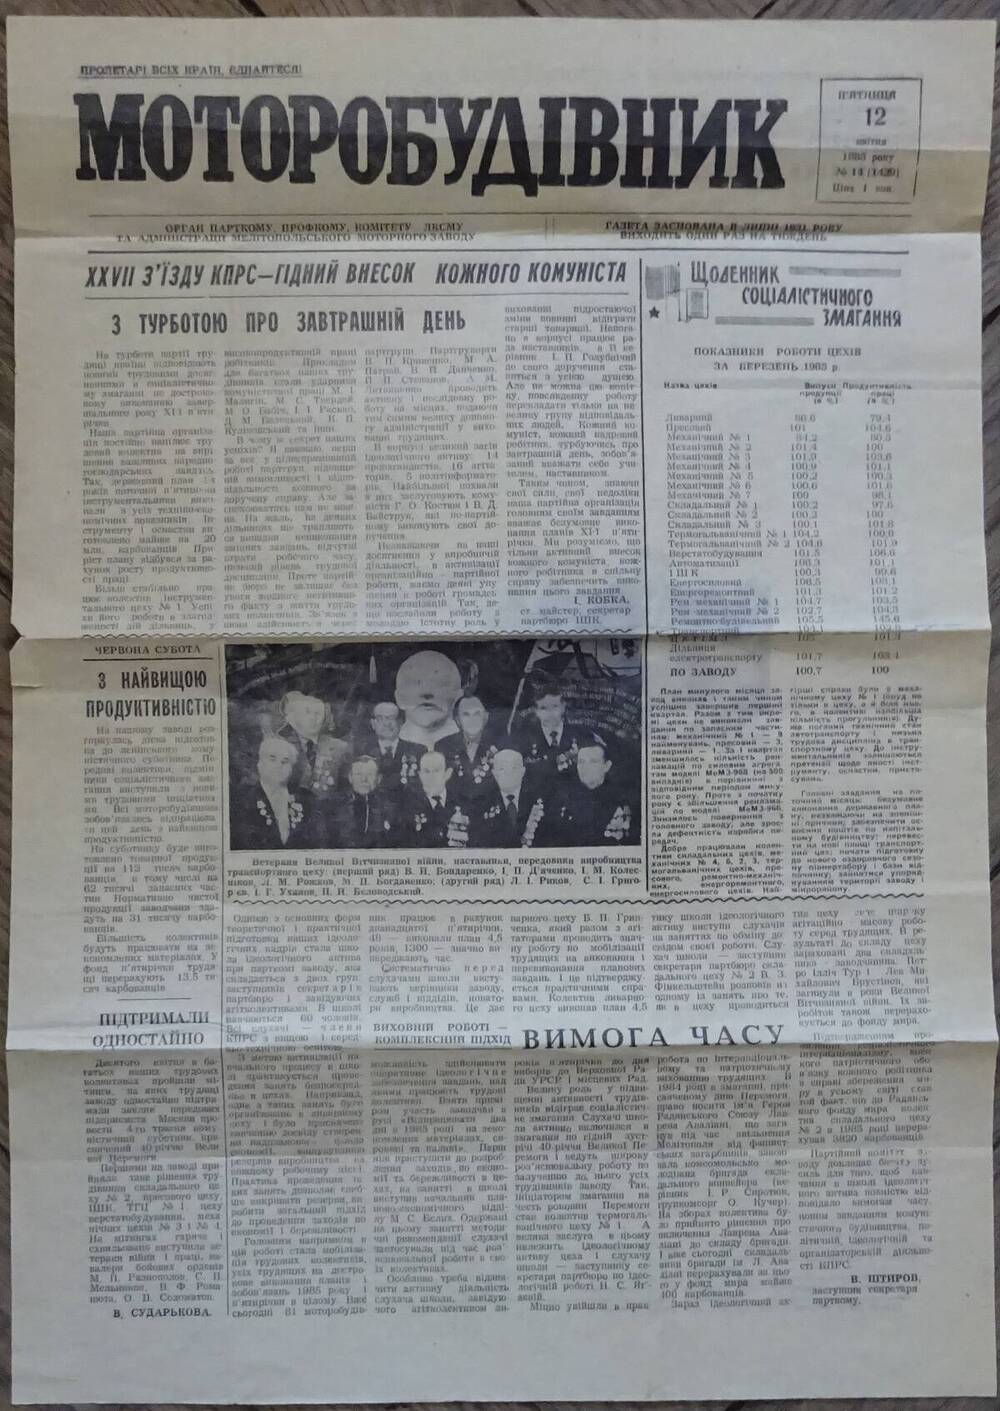 Газета «Моторостроитель» (на укр. яз.) № 14 (1429) от 12.04.1985 г.